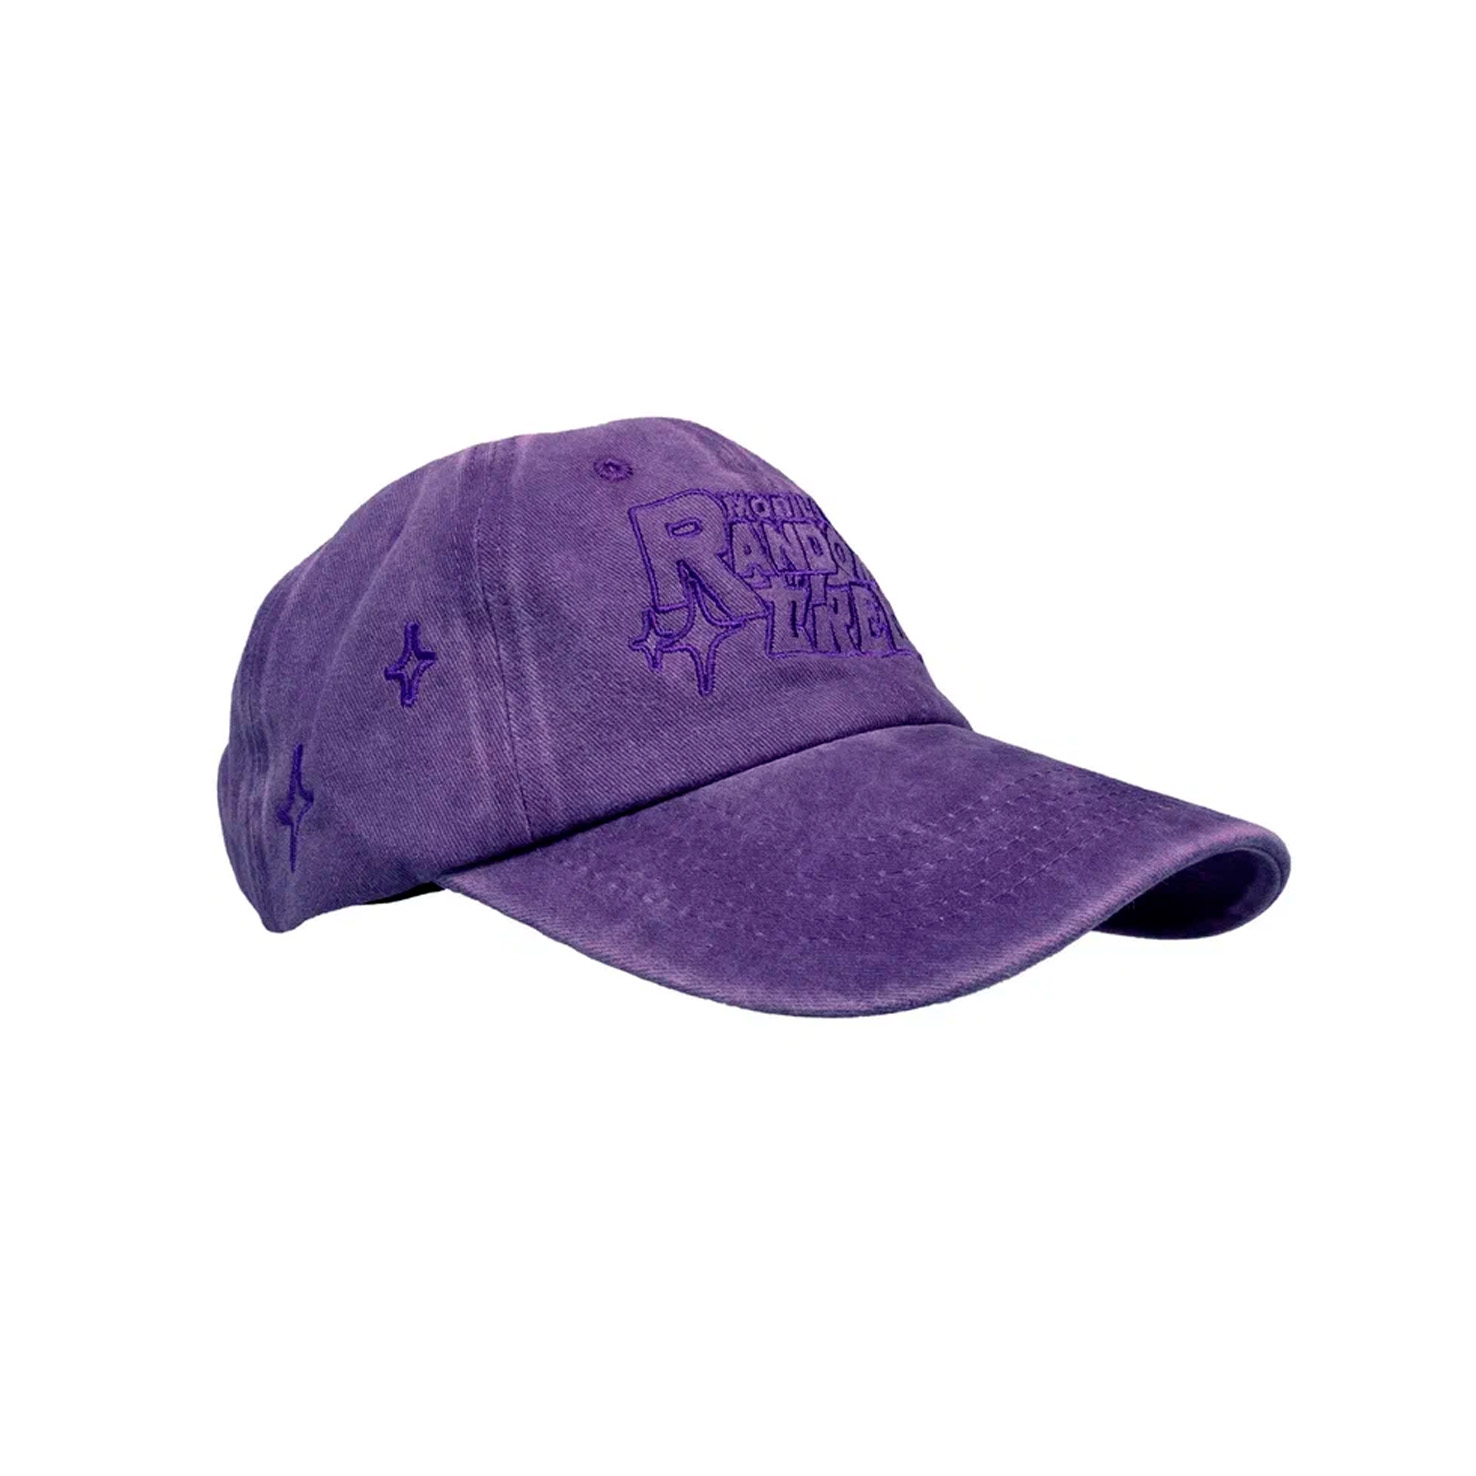 RUNDAM BLK CAP RNDMCREW, размер Один размер, цвет фиолетовый RNCP23001 - фото 1